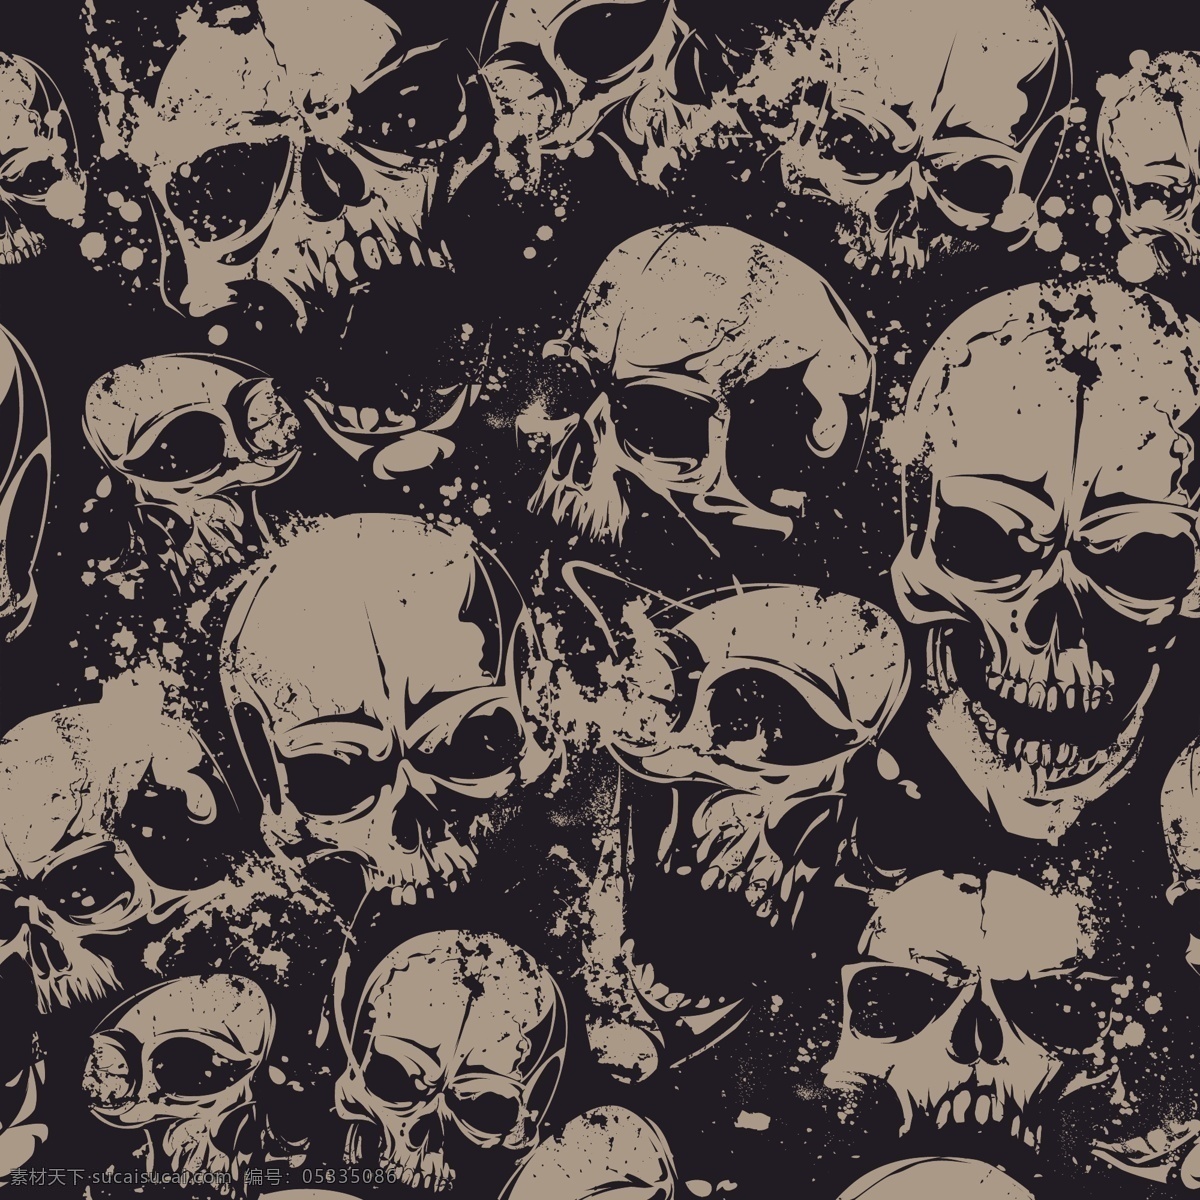 骷髅 人类头骨 恐怖图案 万圣节素材 海盗 卡通插画 创意设计 时尚 印花 图案设计 t恤印花 矢量